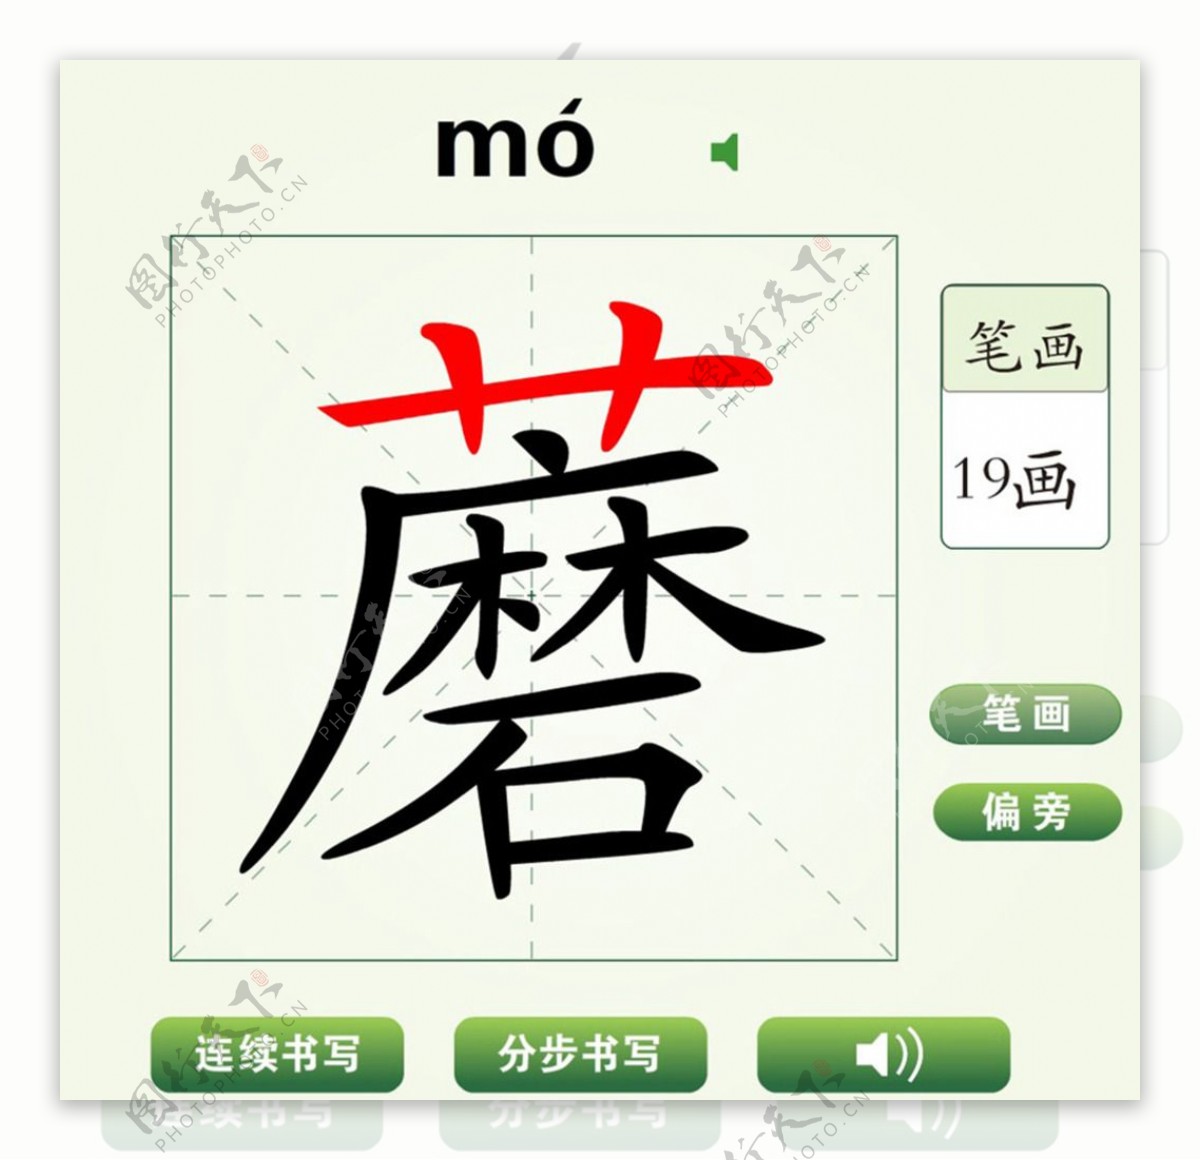 中国汉字蘑字笔画教学动画视频